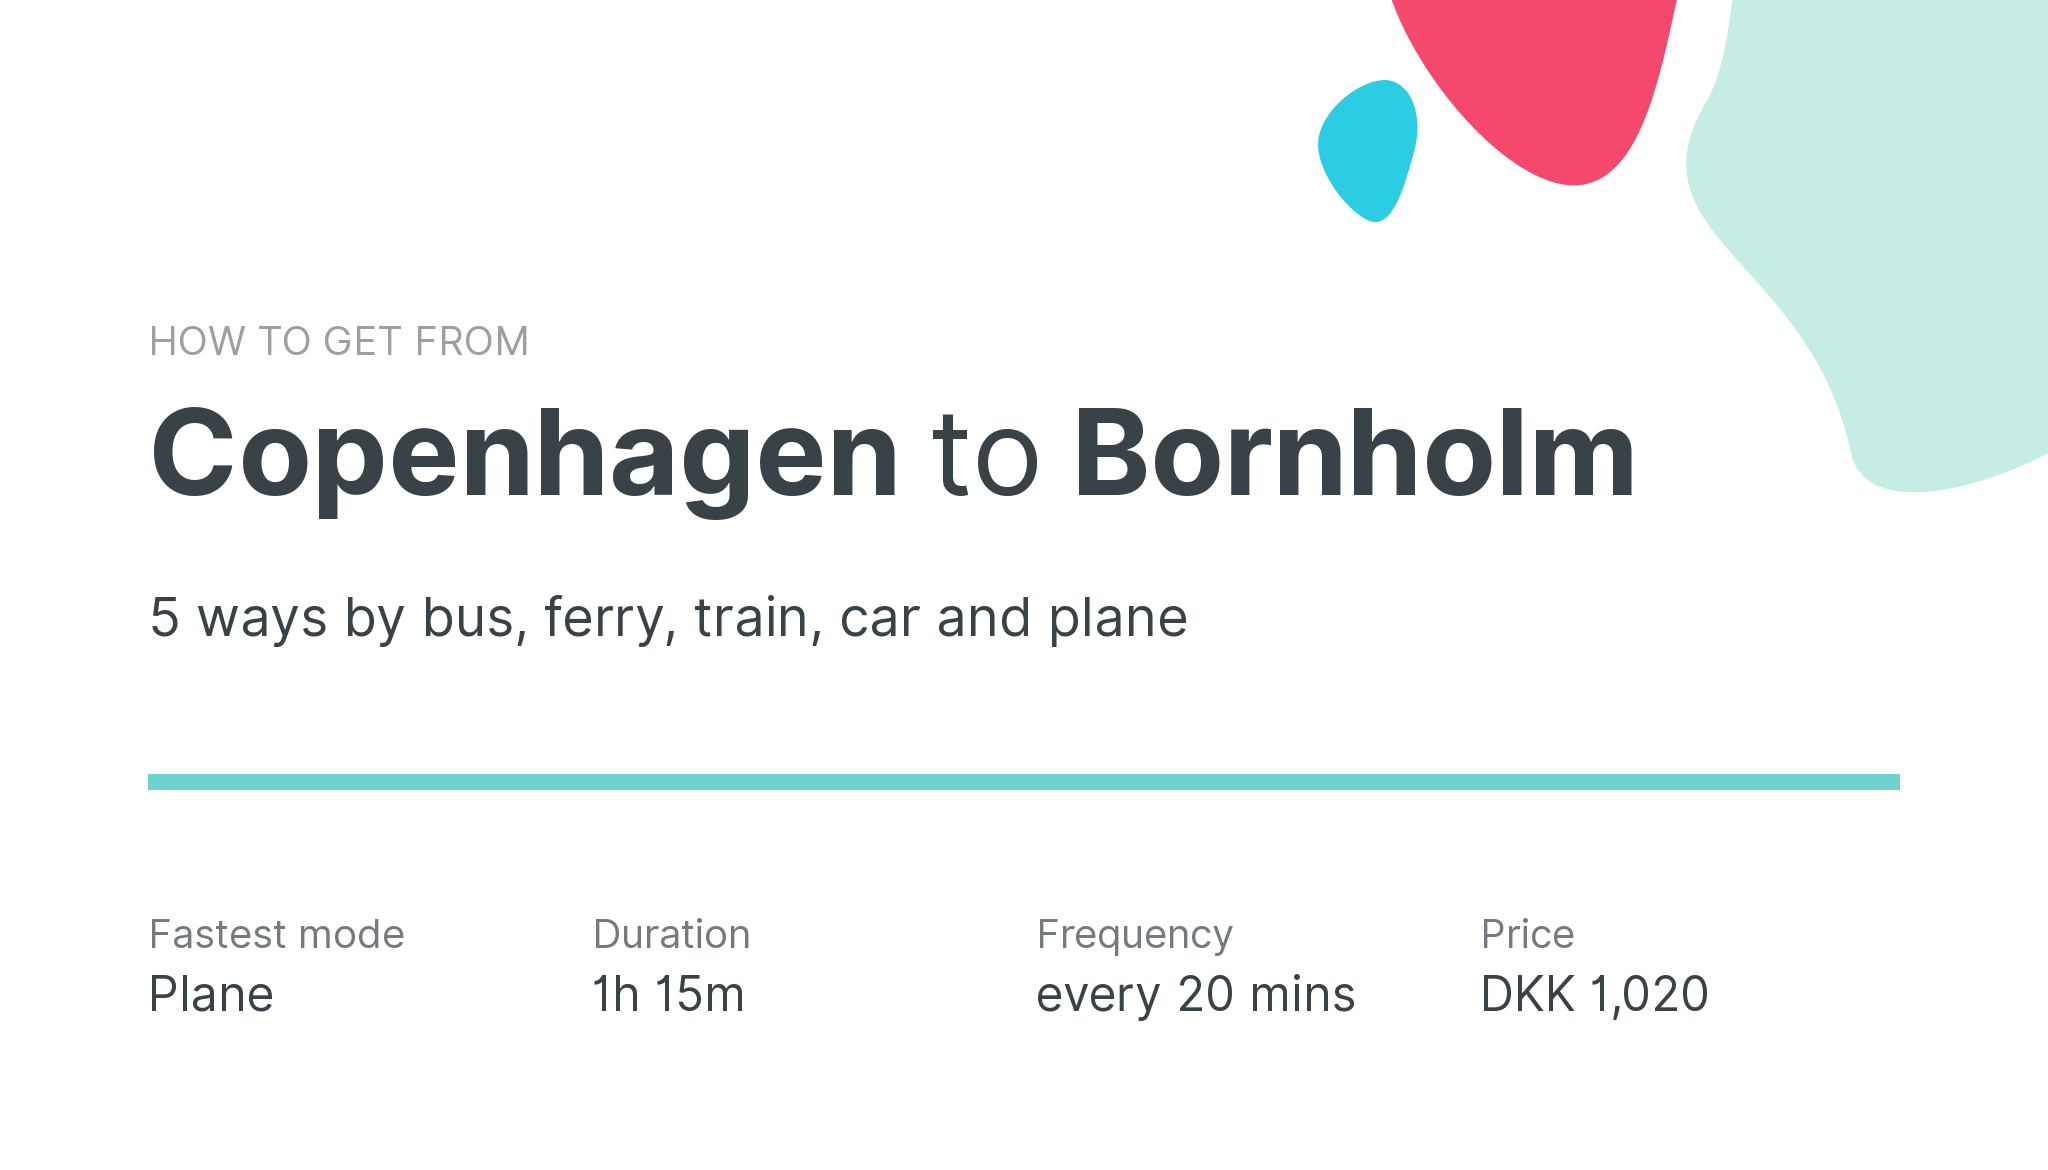 How do I get from Copenhagen to Bornholm